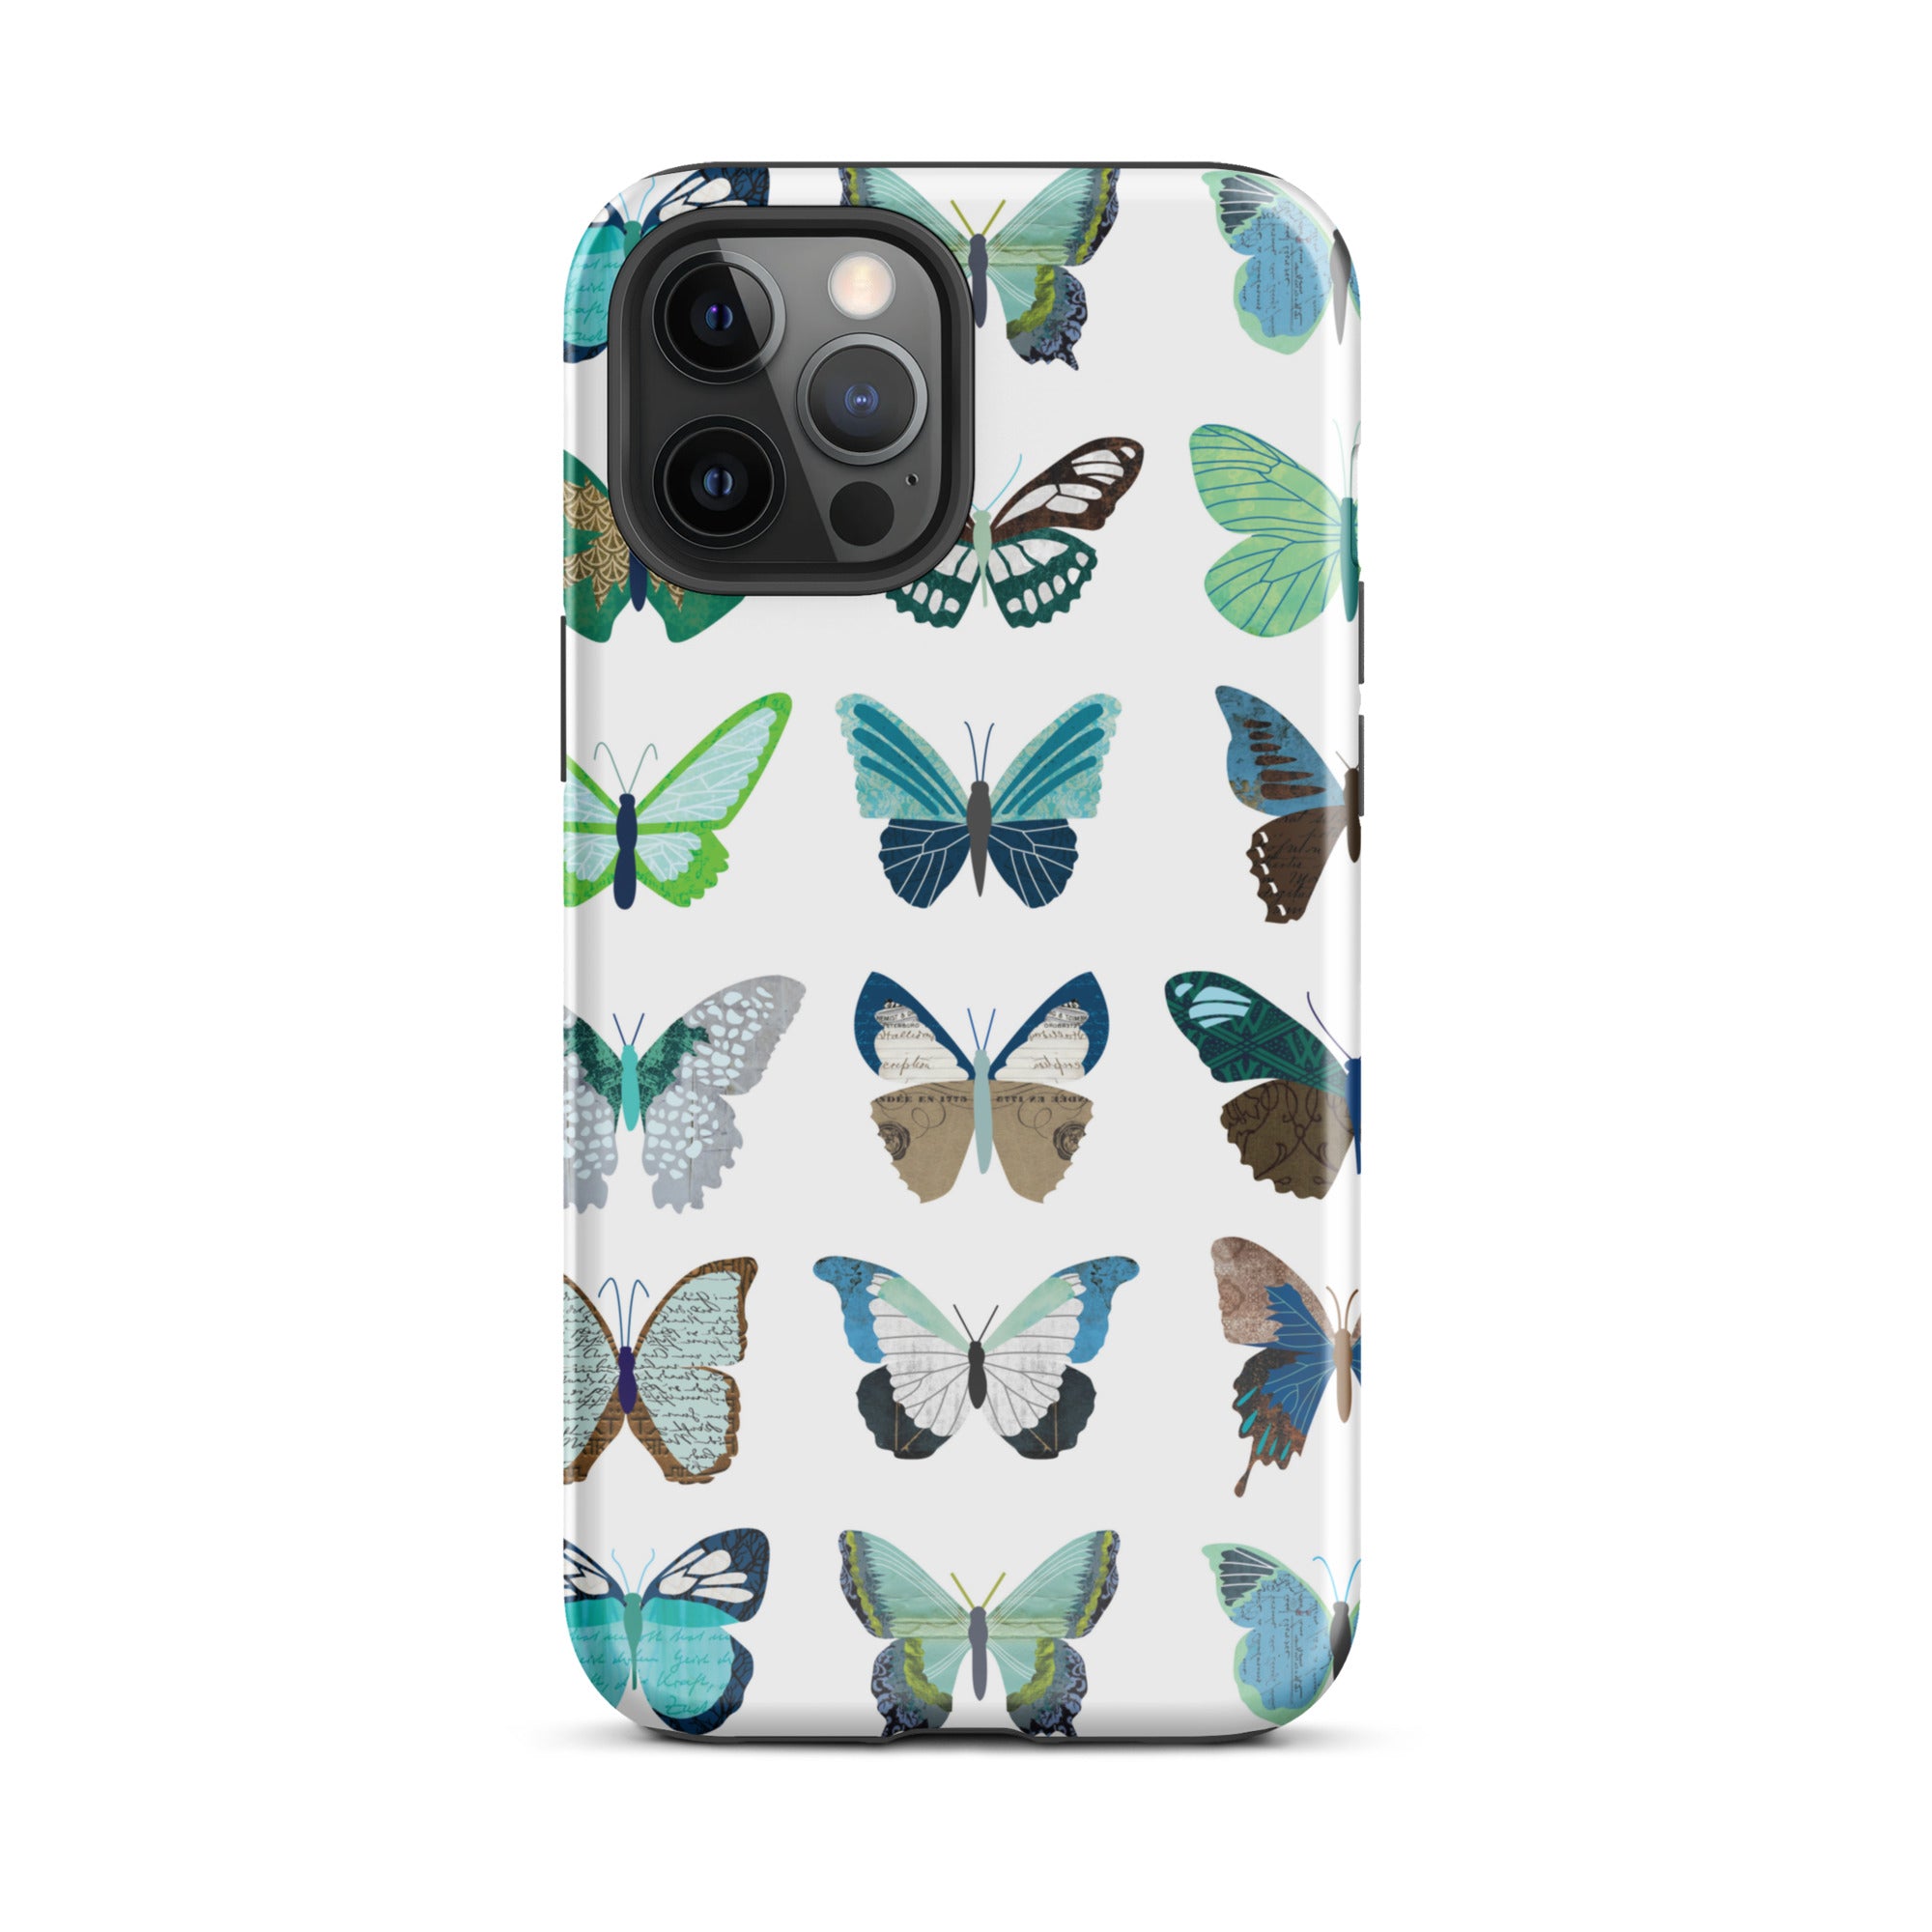 Mariposas verdes y azules - Funda resistente para iPhone®